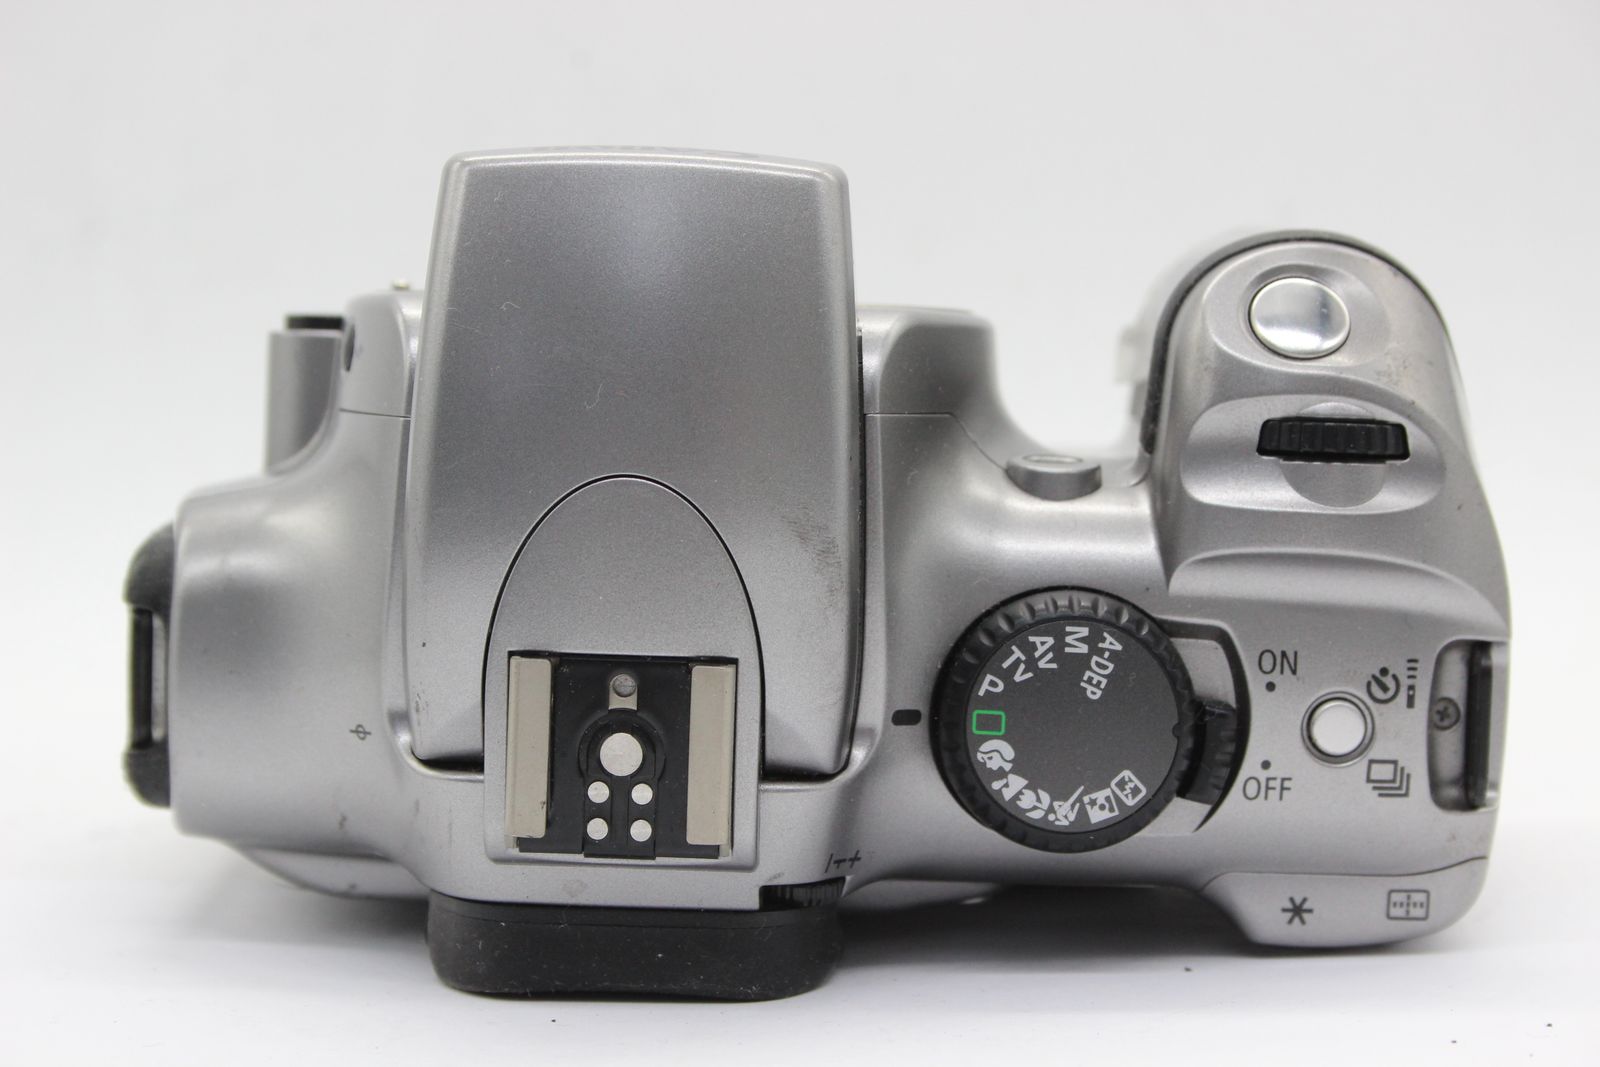 返品保証】 キャノン Canon EOS Kiss Digital SIGMA ZOOM 15-30mm F3.5-4.5 DG バッテリー付き  デジタル一眼 s6191 - メルカリ